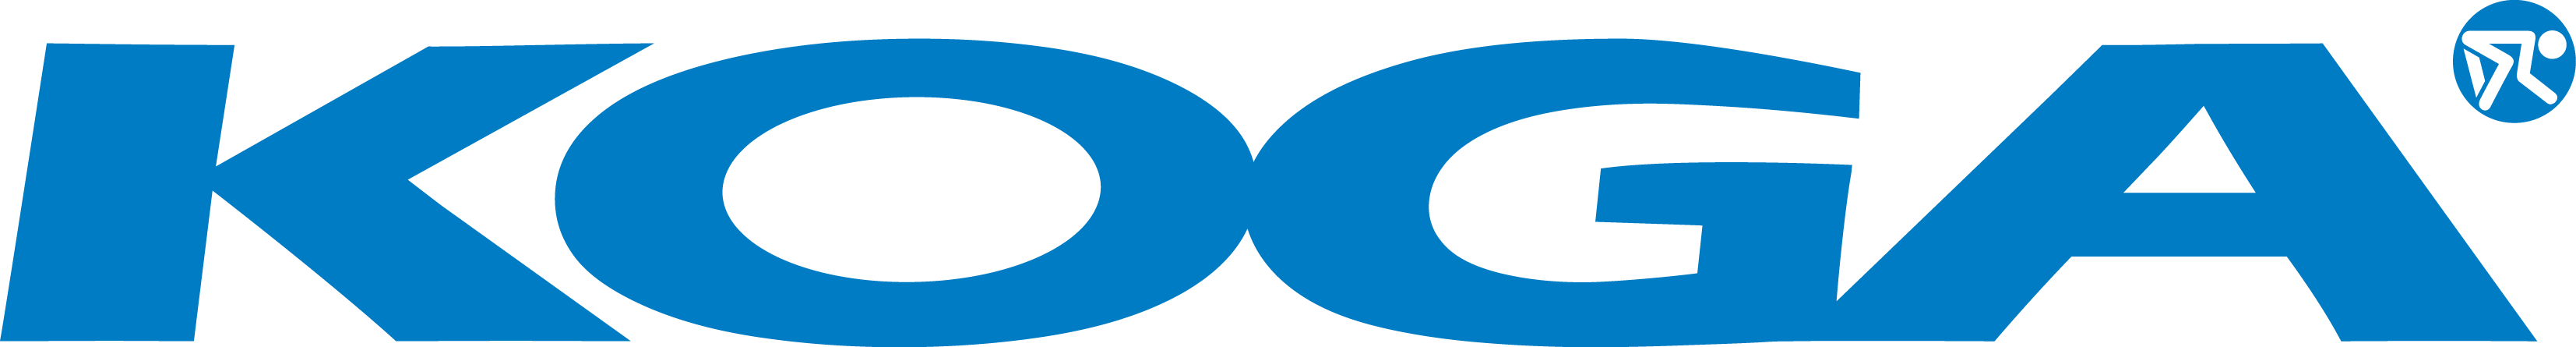 van raam logo